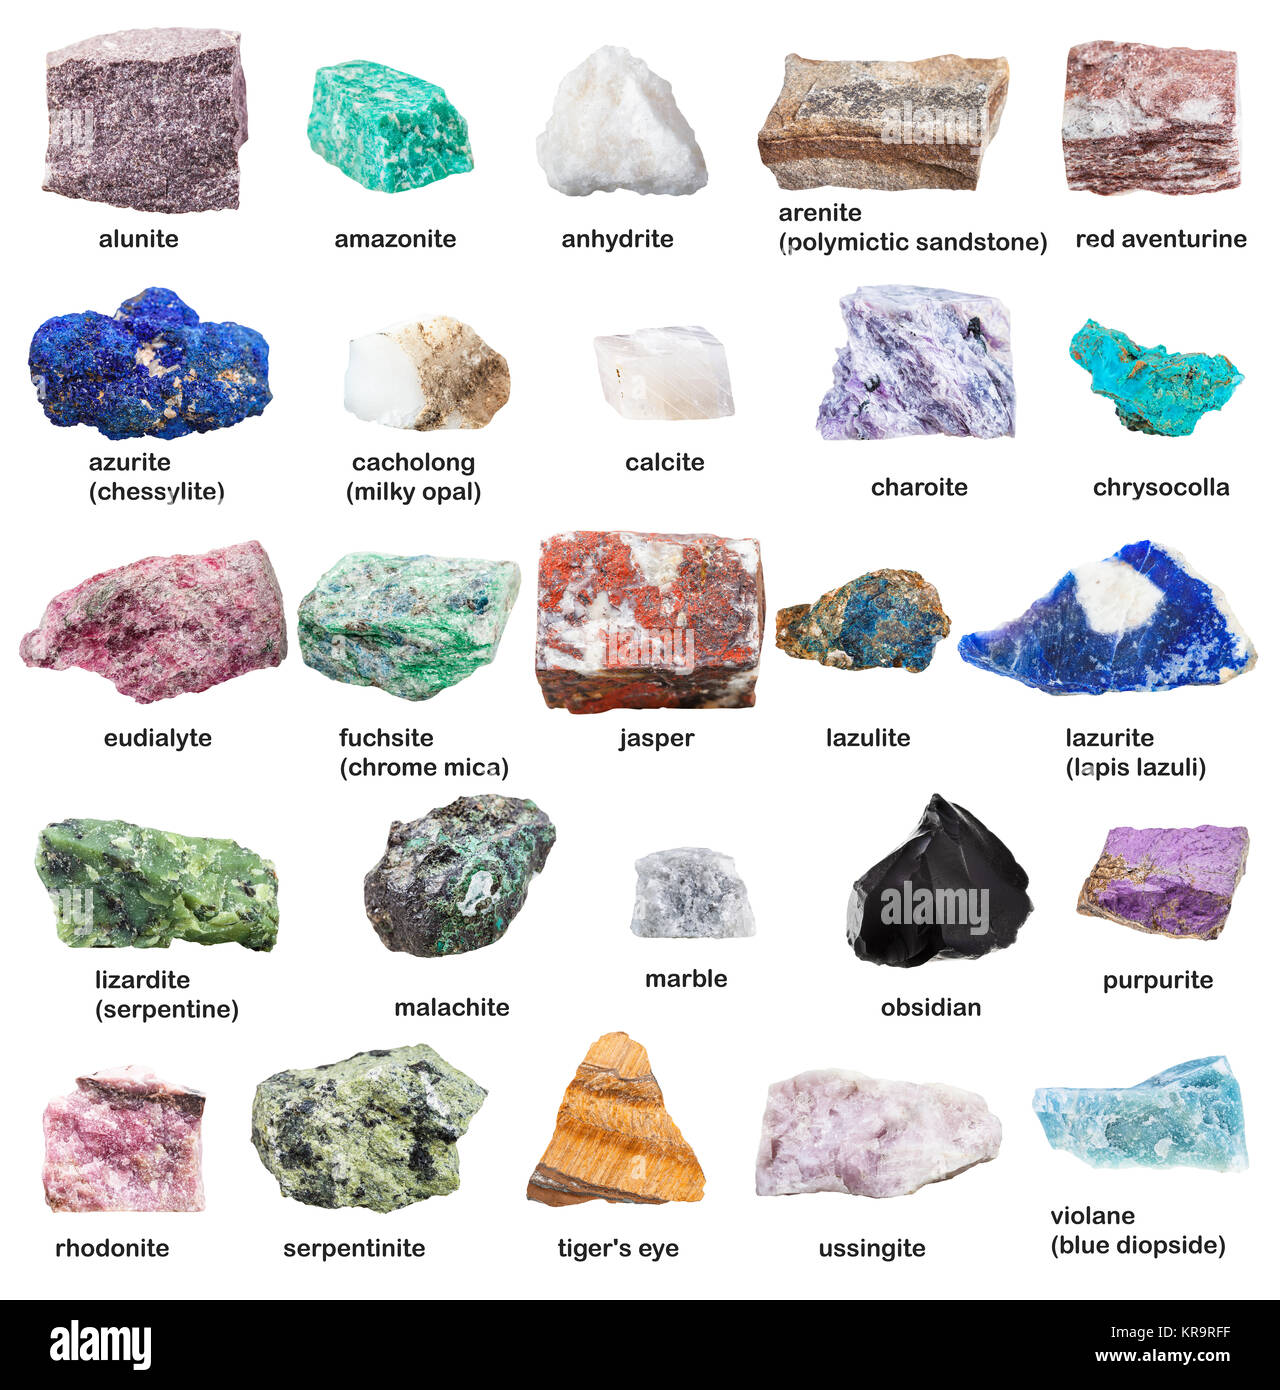 Raw dekorative Edelsteine und Mineralien mit Namen Stockfotografie - Alamy